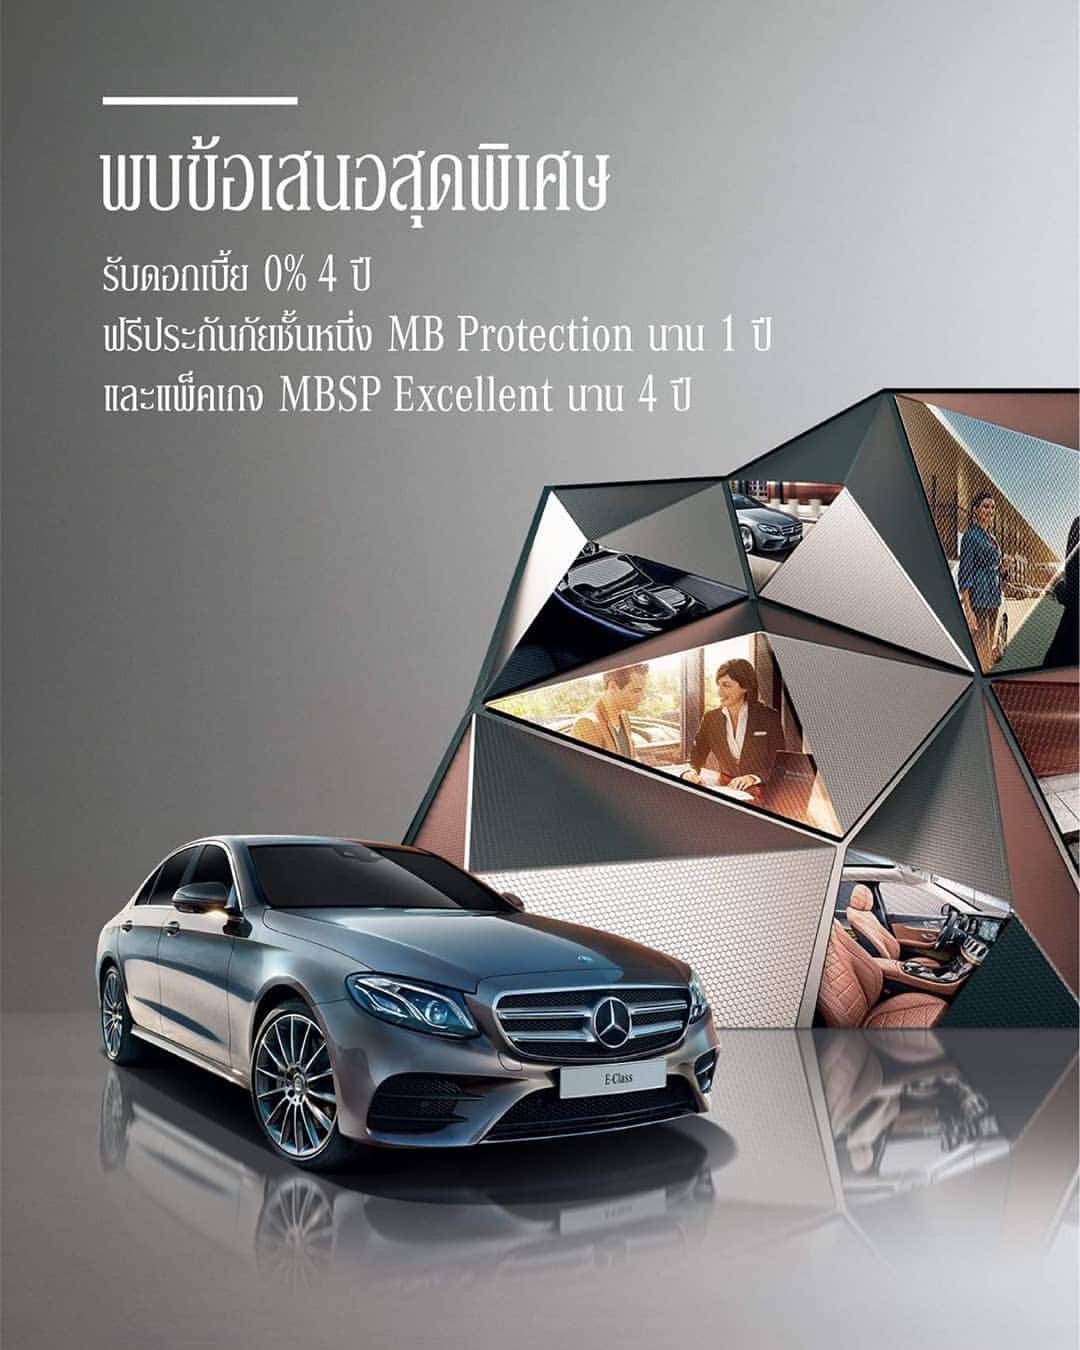 Mercedes-Benz Thailandさんのインスタグラム写真 - (Mercedes-Benz ThailandInstagram)「วินาทีนี้คือช่วงเวลาที่ดีที่สุด ที่คุณควรจะเป็นเจ้าของ Mercedes-Benz สำหรับรถยนต์เมอร์เซเดส-เบนซ์รุ่น  E-Class Saloon ทุกรุ่น พบข้อเสนอสุดพิเศษ รับดอกเบี้ย 0% นาน 4 ปี  พร้อมฟรีประกันภัยชั้นหนึ่ง MB Protection เป็นระยะเวลา 1 ปี และแพ็กเกจ MBSP Excellent นาน 4 ปี หรือเลือกรับส่วนลดเงินสดสุดพิเศษ*  และสำหรับลูกค้าที่ซื้อและรับมอบรถยนต์เมอร์เซเดส-เบนซ์เฉพาะรุ่นที่ร่วมรายการรับฟรี iPhone XS Max 256 GB มูลค่า 49,900 บาท** พบกันที่งานบางกอก อินเตอร์เนชั่นแนล มอเตอร์โชว์ ครั้งที่ 40 ณ อิมแพ็ค ชาเลนเจอร์ฮอลล์ 3 เมืองทองธานี วันที่ 27 มีนาคม - 7 เมษายน 2562 *รายการส่งเสริมการขายนี้ สำหรับลูกค้าที่ซื้อและรับมอบรถยนต์เมอร์เซเดส-เบนซ์ รุ่น E-Class Saloon ทุกรุ่น ตั้งแต่วันที่ 19 มีนาคม – 30 เมษายน 2562 **สำหรับลูกค้าที่ซื้อและรับมอบรถยนต์เมอร์เซเดส-เบนซ์เฉพาะรุ่นที่ร่วมรายการ ตั้งแต่วันที่ 7 มีนาคม – 30 เมษายน 2562  เงื่อนไขเป็นไปตามบริษัทฯ กำหนด โปรดสอบถามรายละเอียดเพิ่มเติมได้ที่ผู้จำหน่ายเมอร์เซเดส-เบนซ์อย่างเป็นทางการทั่วประเทศ  #IntelligentMobilityReimagined #MercedesBenz #MercedesBenzThailand」3月29日 13時12分 - mercedesbenzthailand